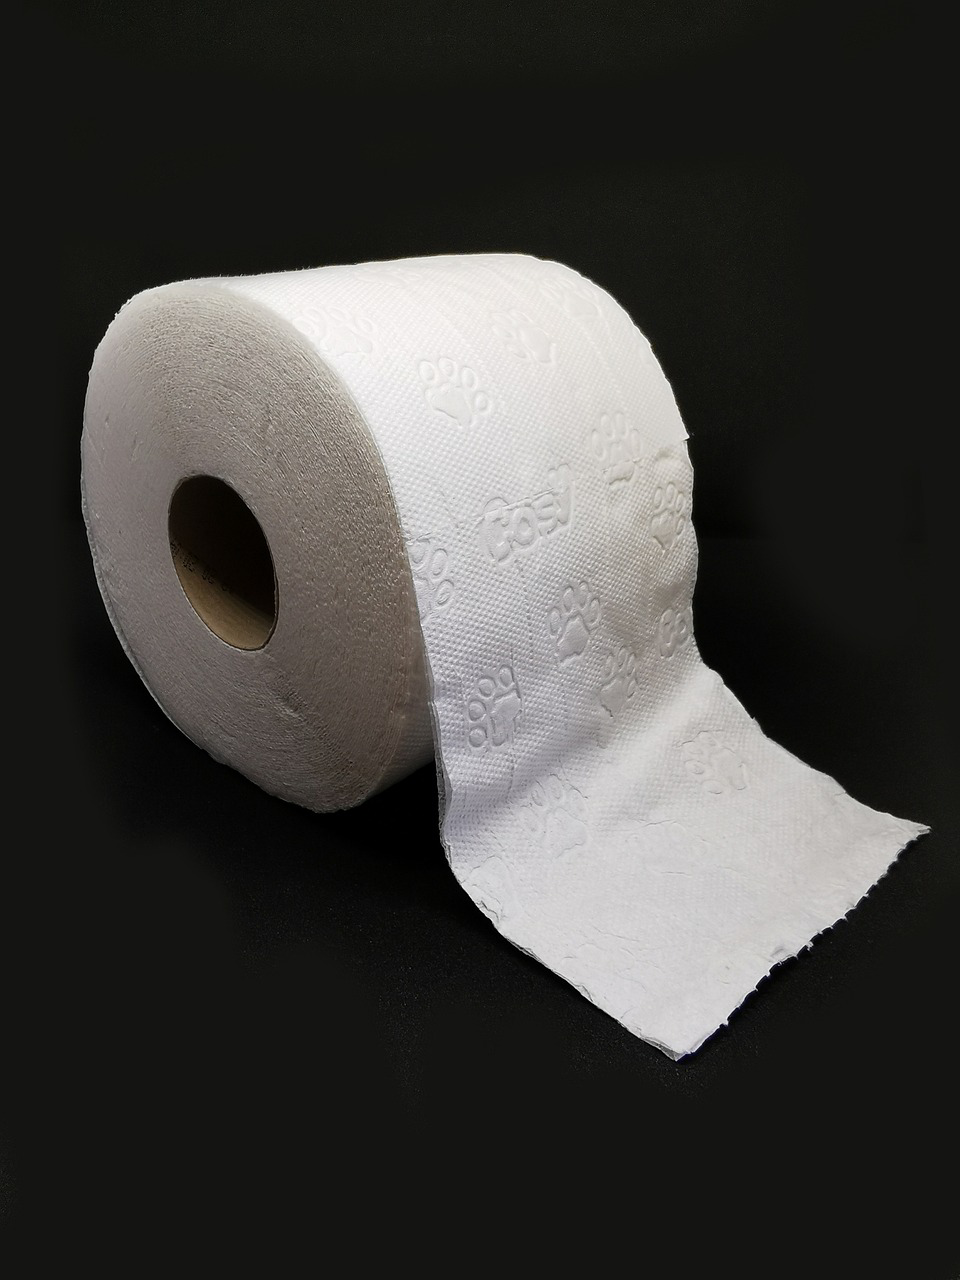 Eine Rolle Toilettenpapier. Waschbares Klopapier, wie z.B. PinkeltÃ¼cher stellen eine umweltfreundliche Alternative dar.